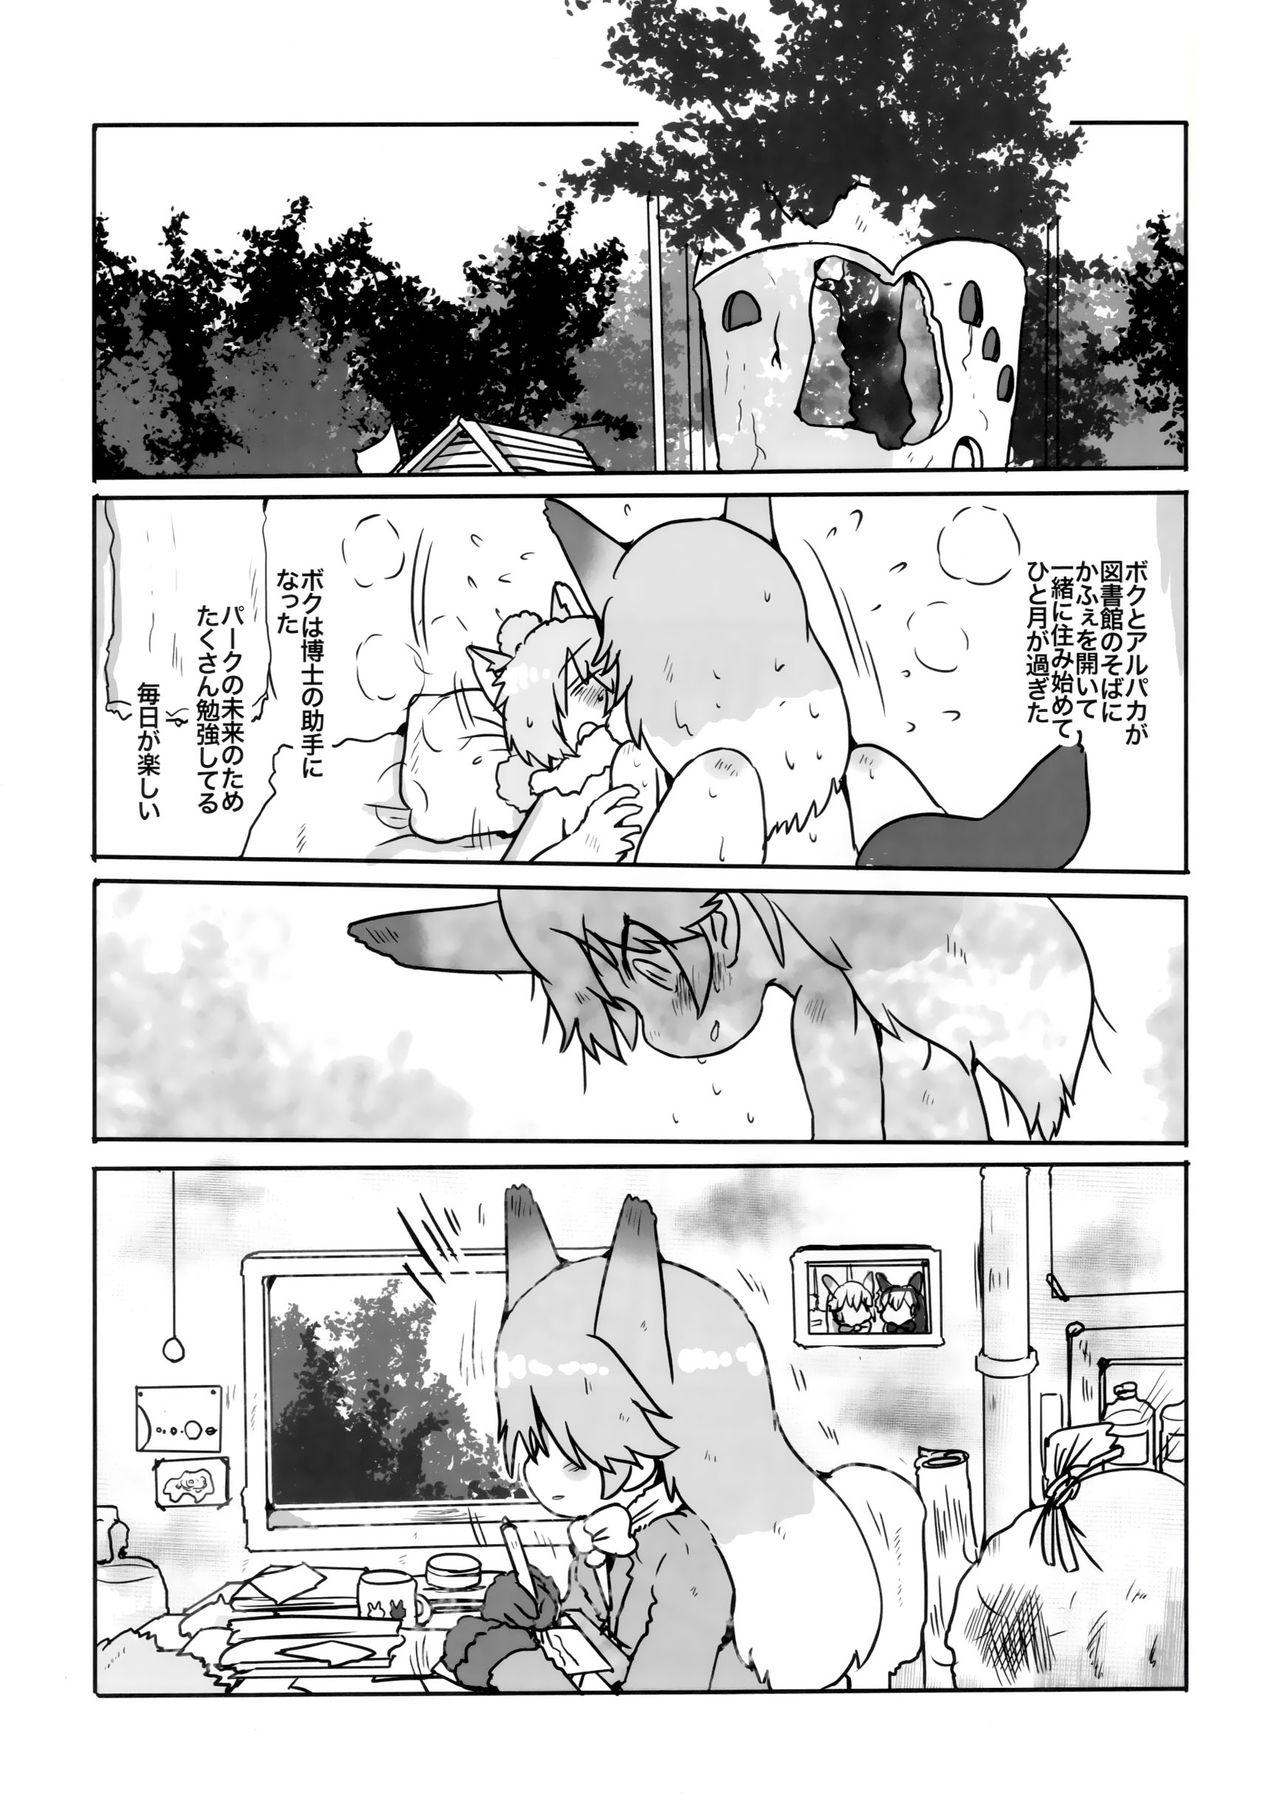 Boobs Boku, Koko de Zutto Kimi to Itai. - Kemono friends Face - Page 4